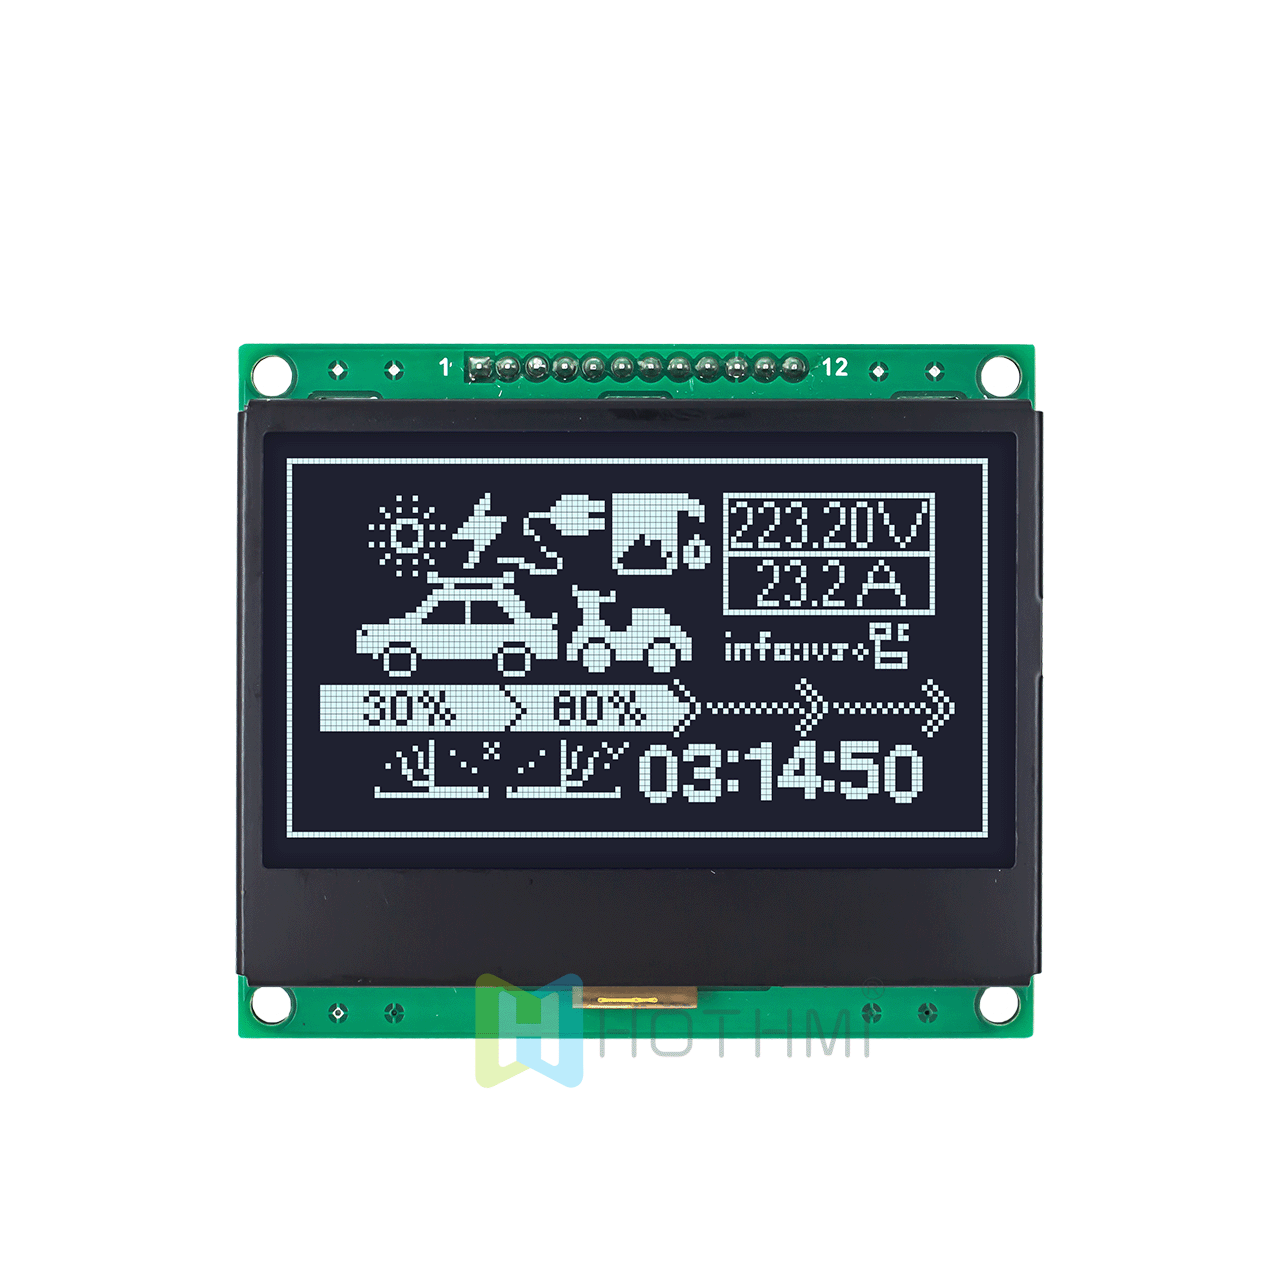 3 英寸 128x64 图形 LCD 显示模块 | 128x64 图形 LCD 模块 | SPI 接口 | 黑底白字| DFSTN 负片 | Adruino